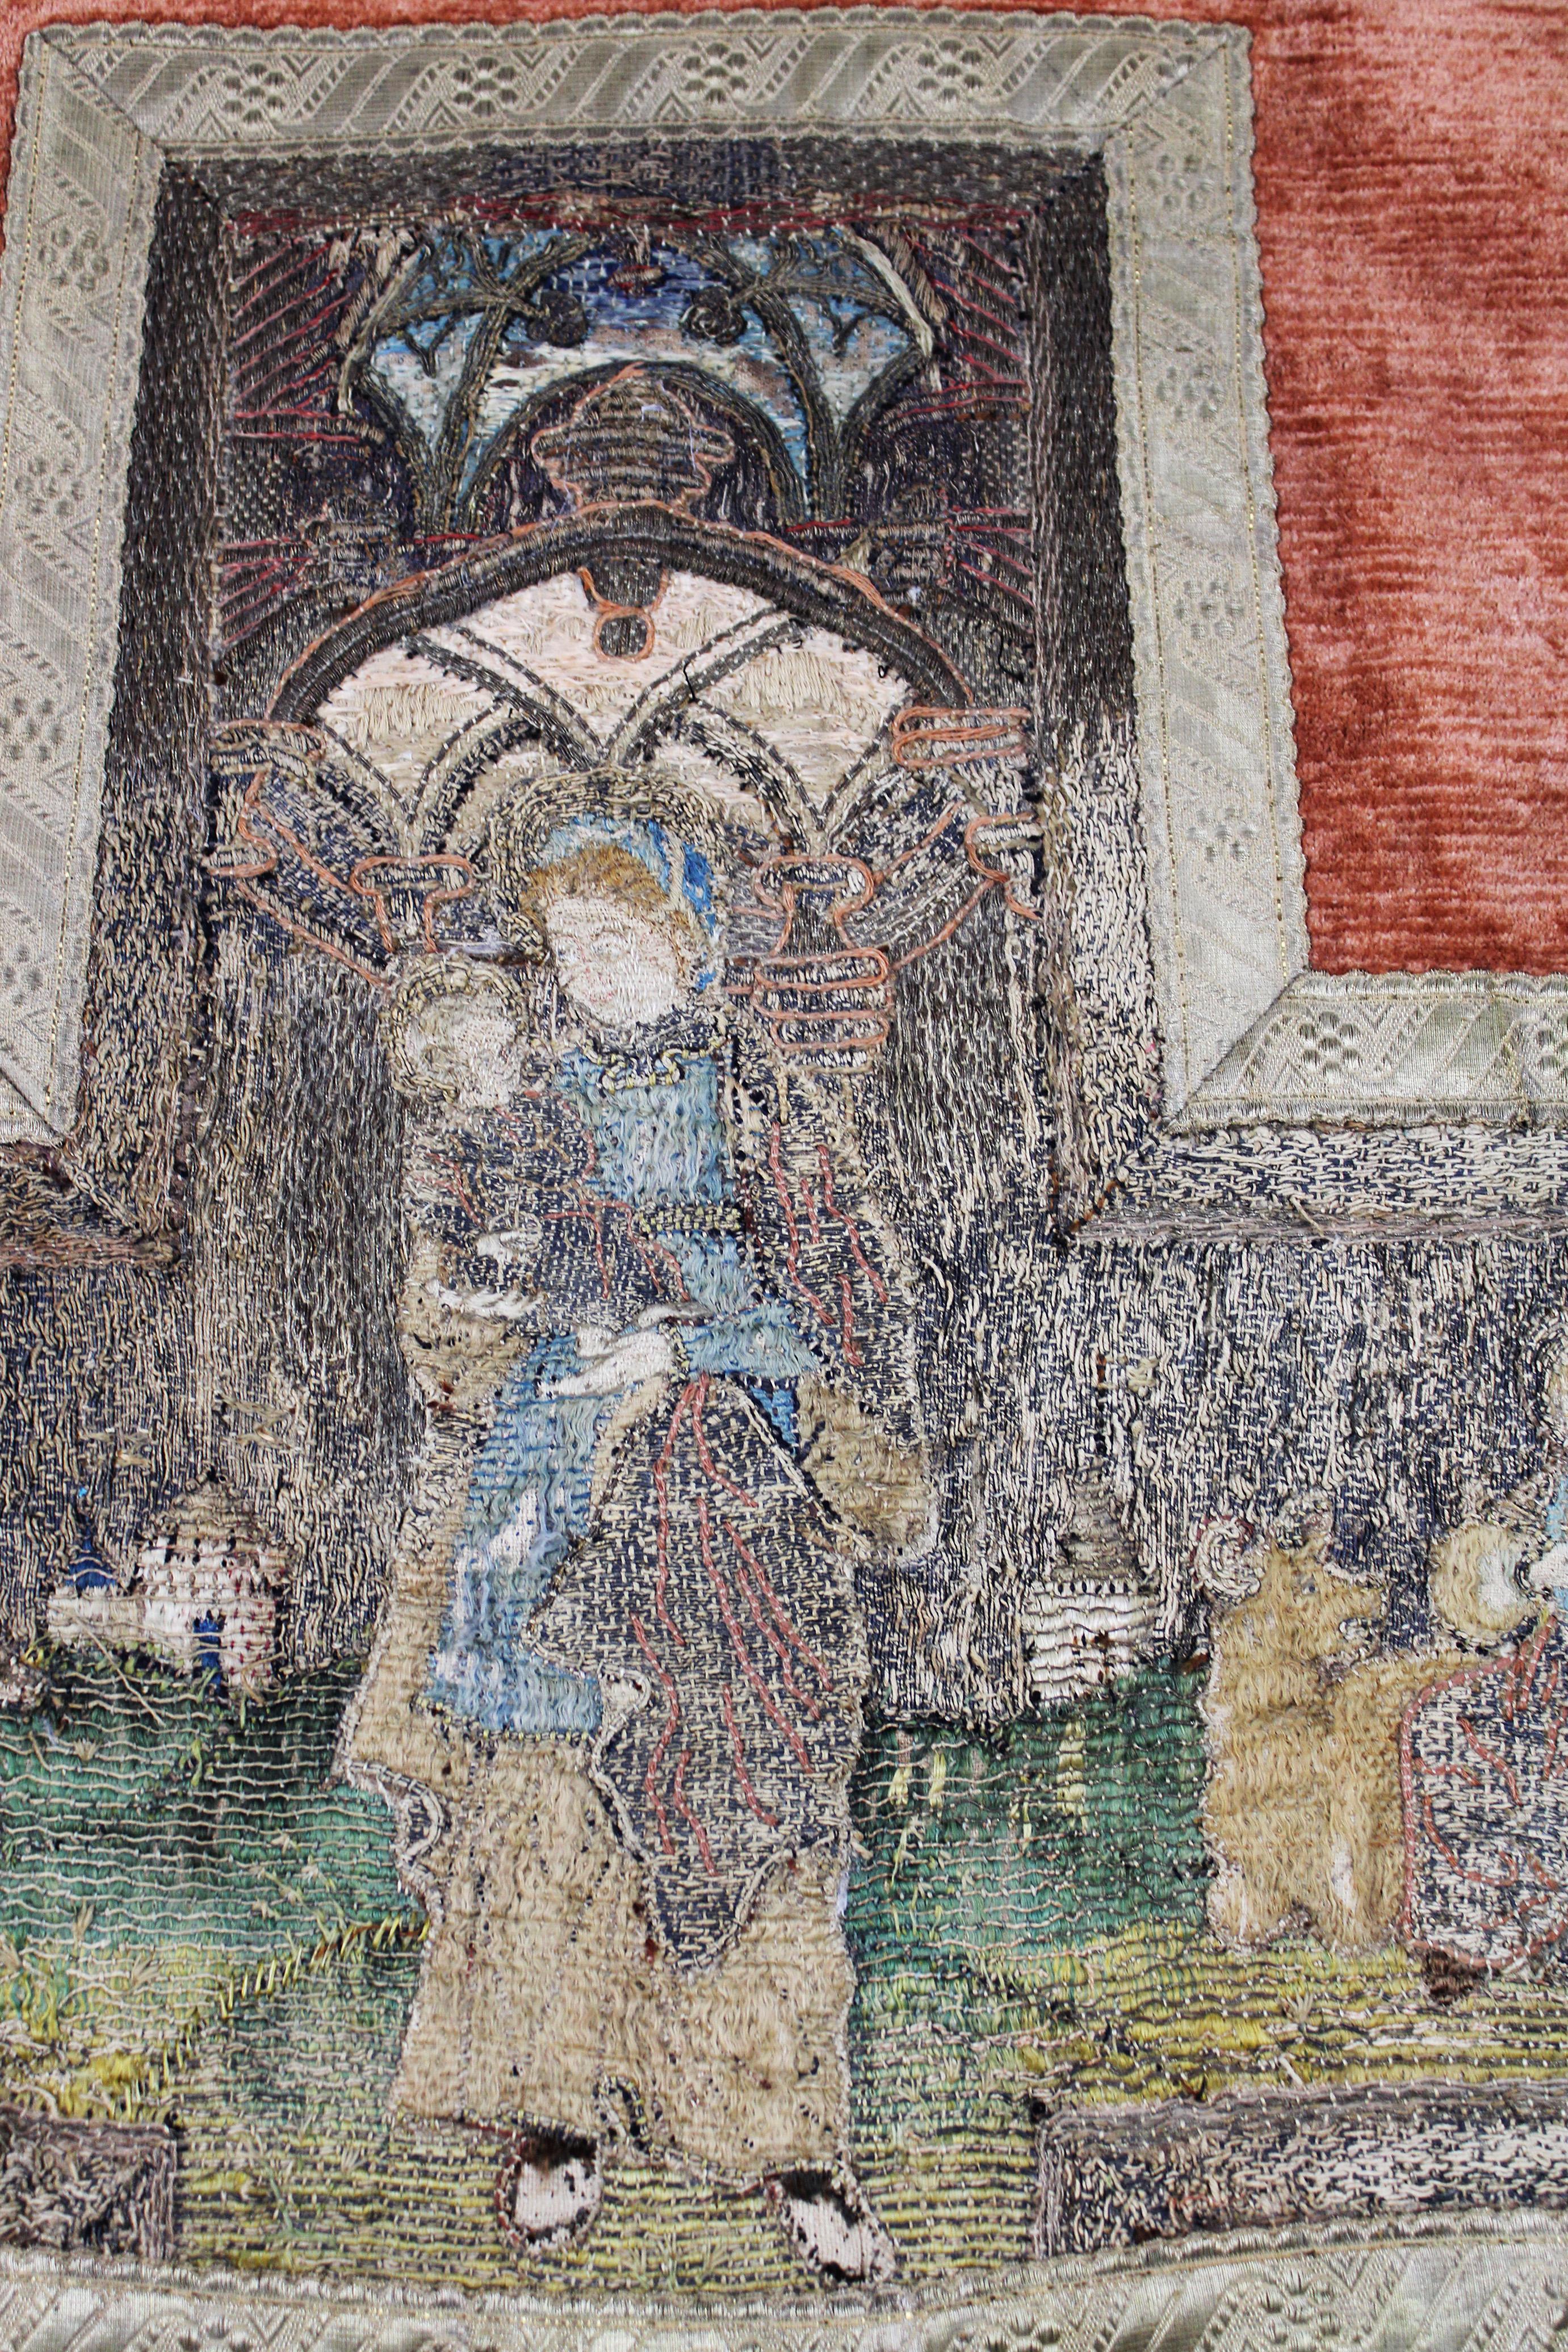 Flämische Handstickereien aus dem 15. bis 16. Jahrhundert schmücken dieses Messgewandfragment, das Szenen mit der Jungfrau Maria, der Madonna und dem Kind inmitten eines Gartens zeigt. Dieses aus aufwändiger italienischer Seide gefertigte Stück ist